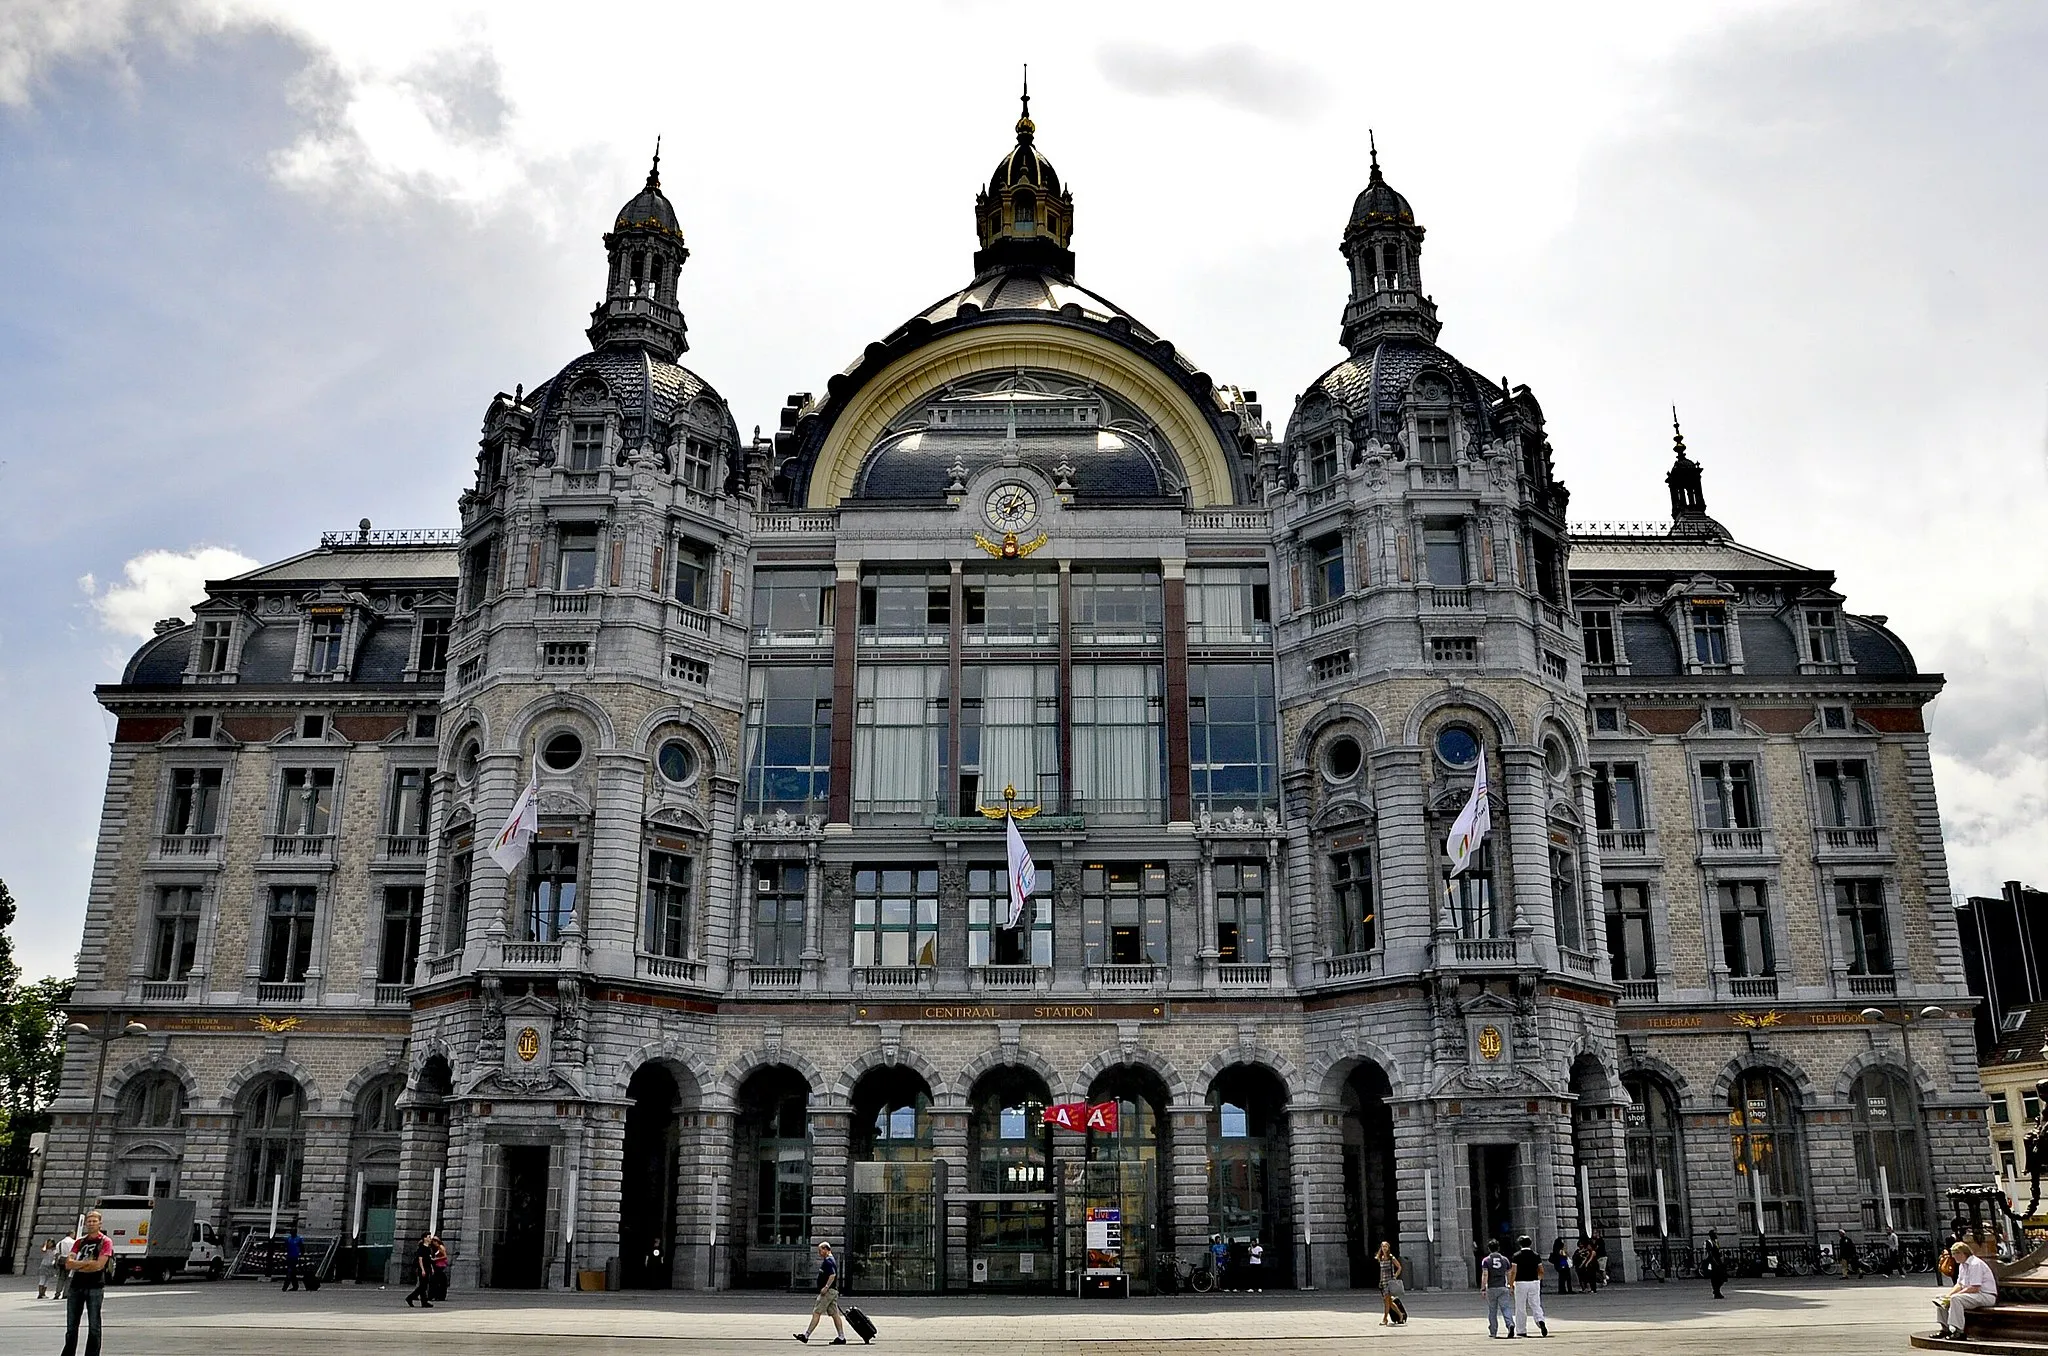 Image de Prov. Antwerpen